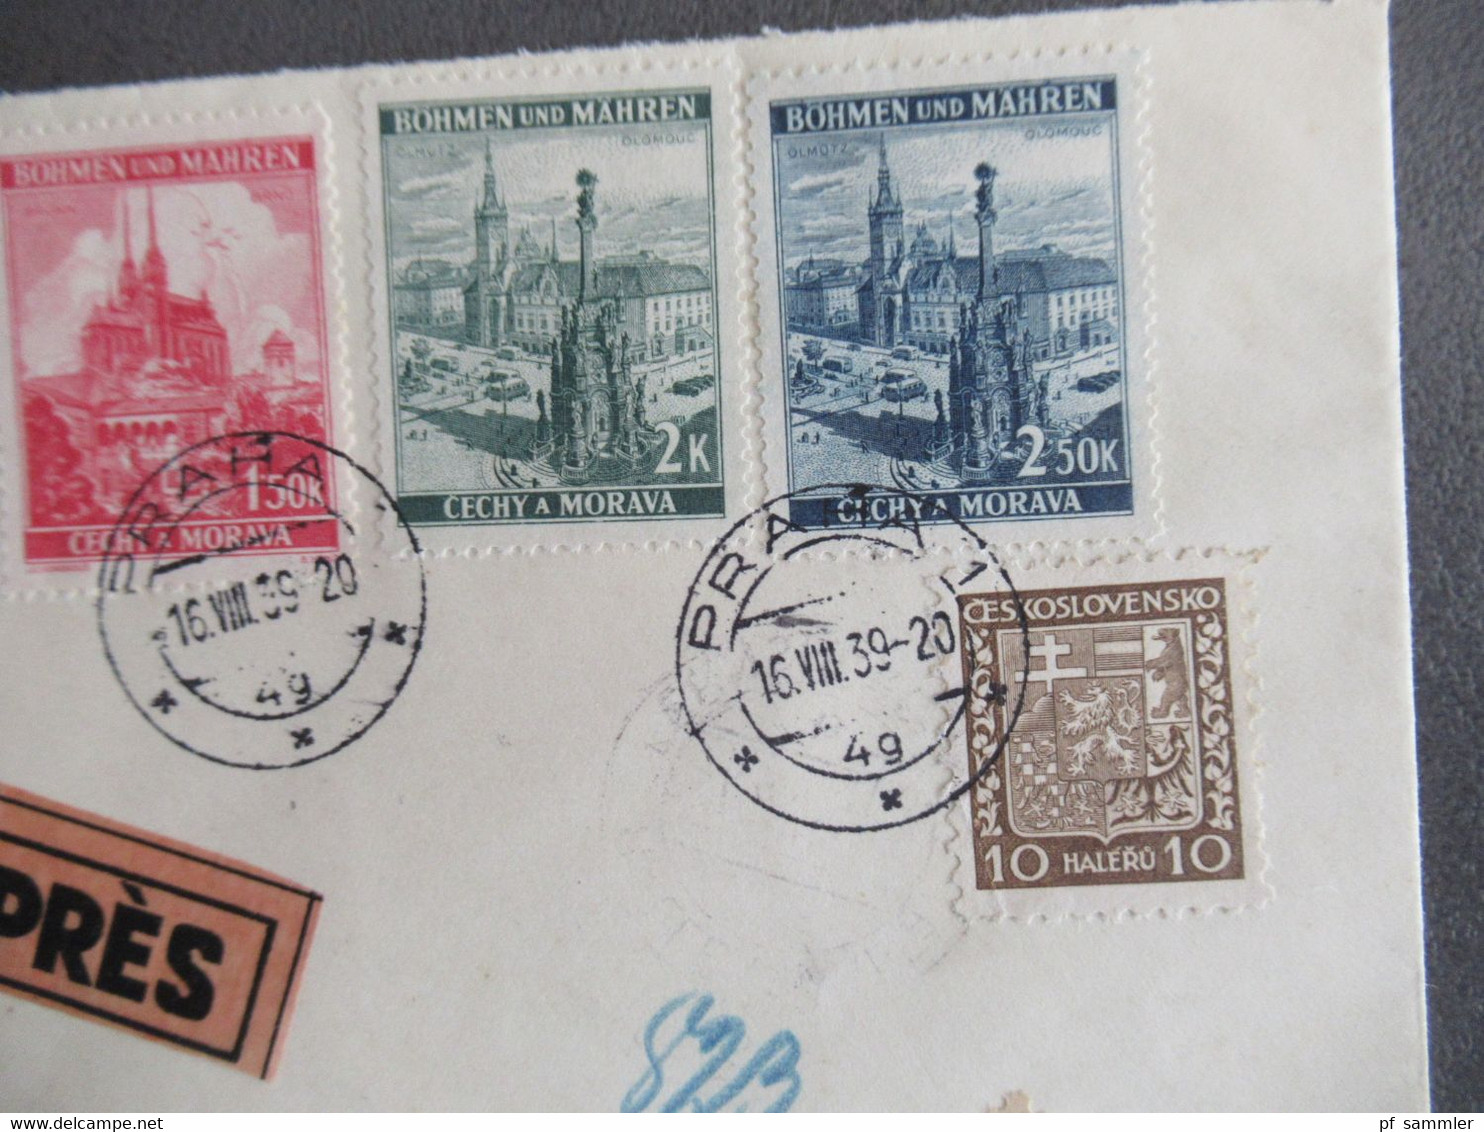 Böhmen Und Mähren 16.8.1939 Früher Beleg MiF Mit CSSR Marke Einschreiben Expres Ank. Stempel Halle Fernsprechamt - Lettres & Documents